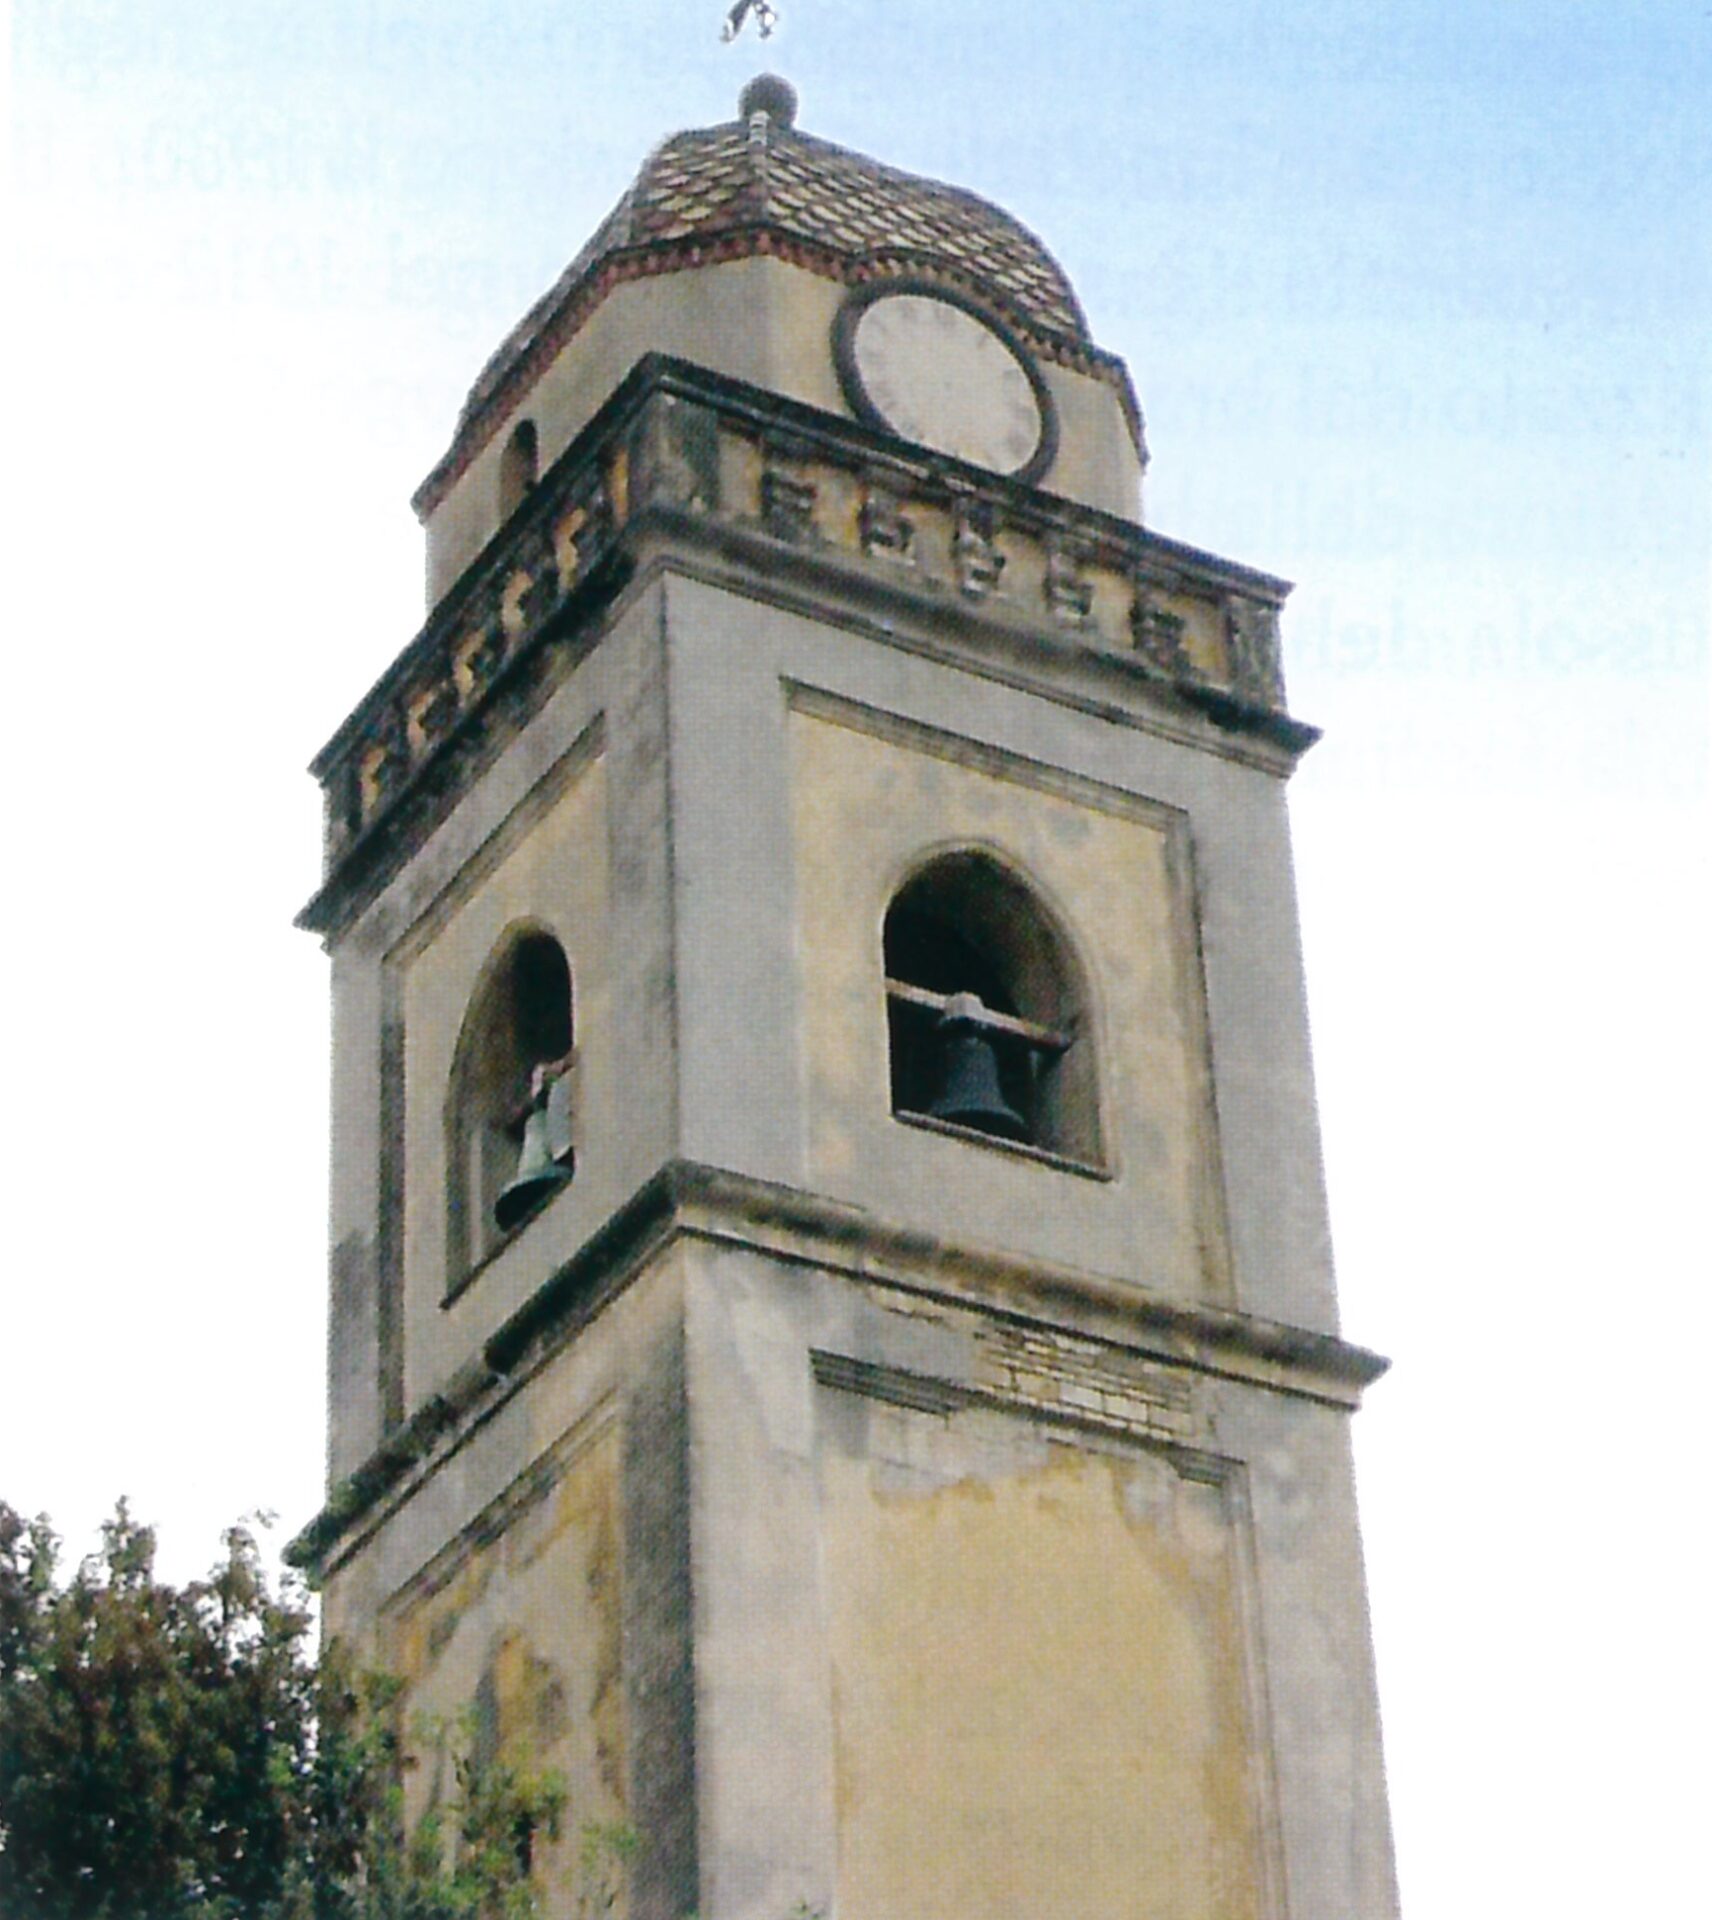 Fig 13, Pirri, parrocchiale di San Pietro Apostolo, particolare del campanile.